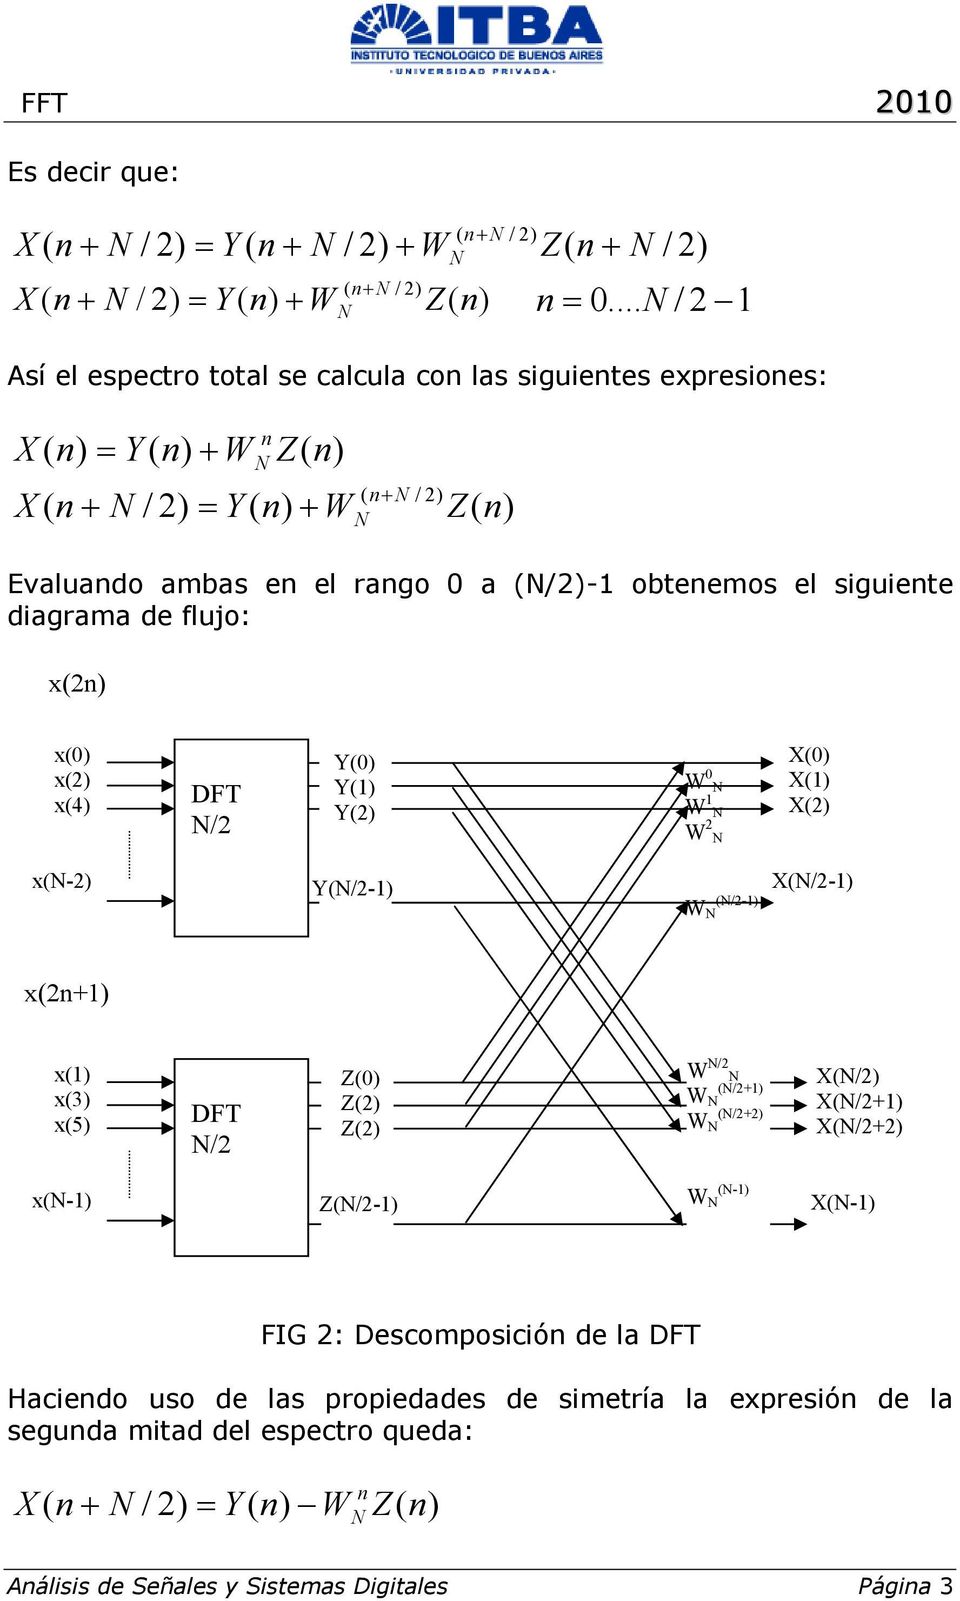 obteemos el siguiete diagrama de flujo: x(2) x(0) x(2) x(4) DFT /2 Y(0) Y(1) Y(2) 1 x(-2) Y(/2) (/2) X(/2) x(2+1) x(1) x(3) x(5) DFT /2 Z(0) Z(2) Z(2) /2 (/2+1)